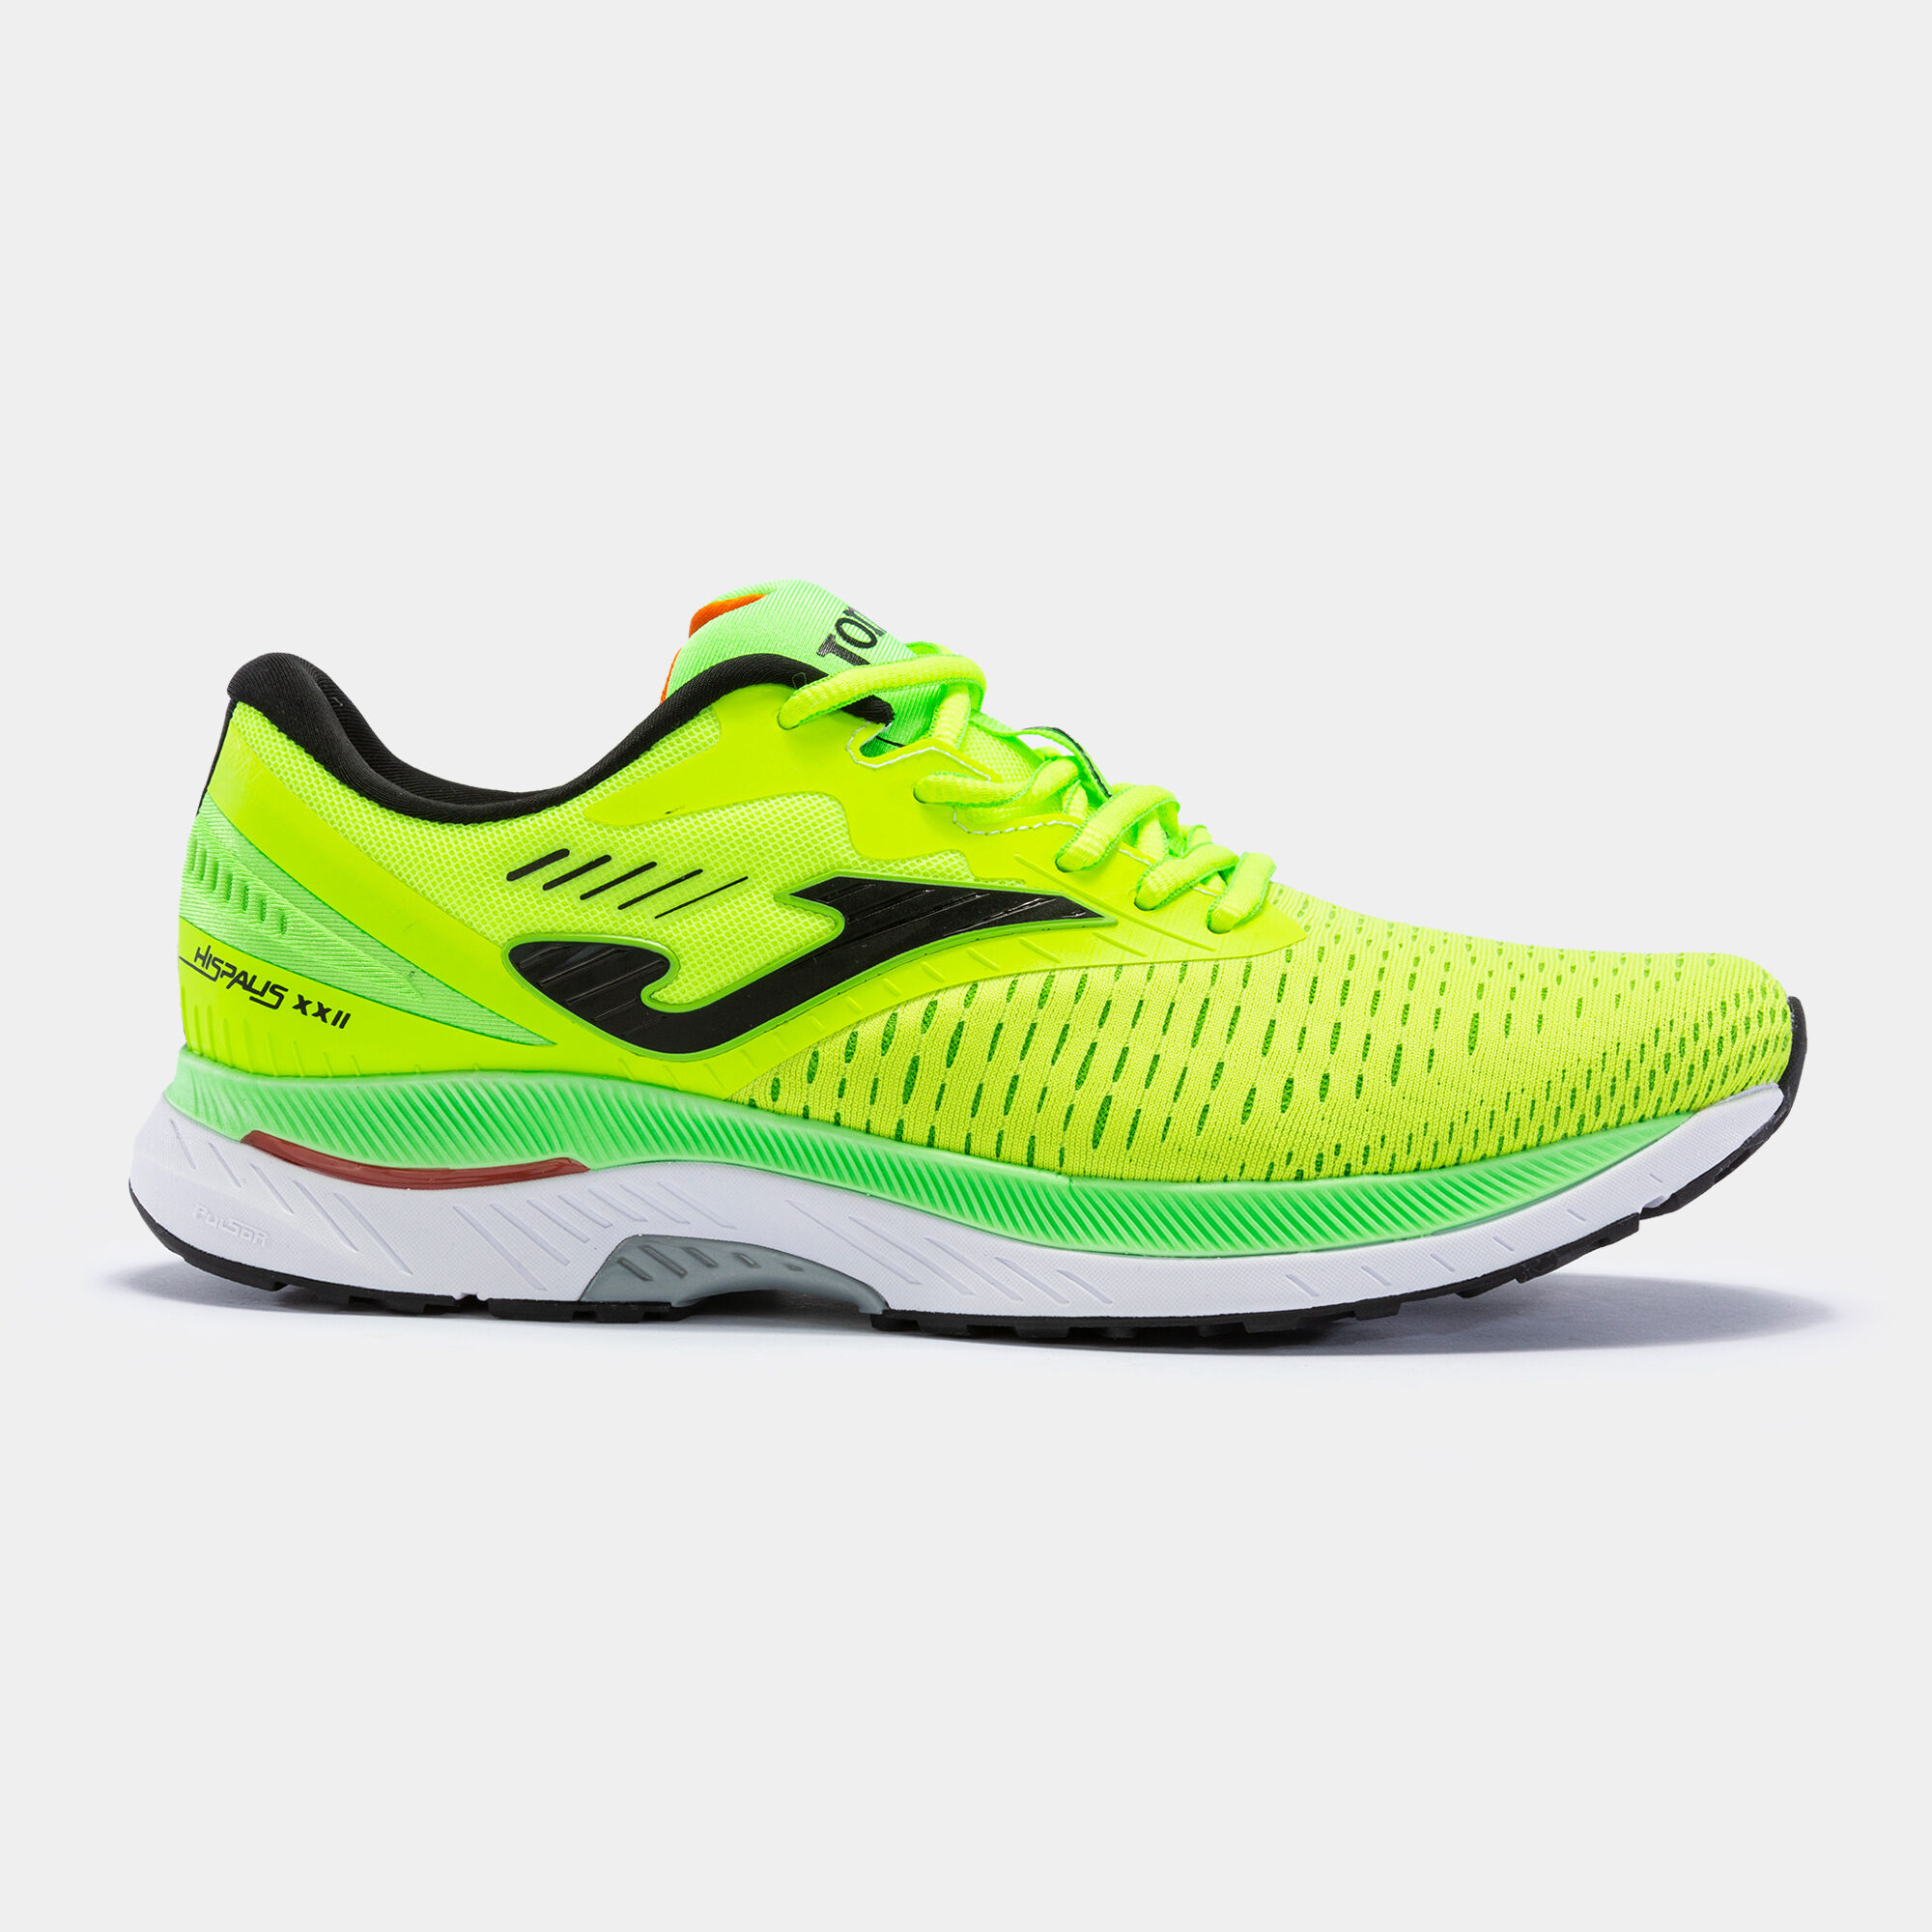 Obuwie sportowe bieganie Hispalis 22 mężczyźni fluorescencyjny zólty fluorescencyjny zielony